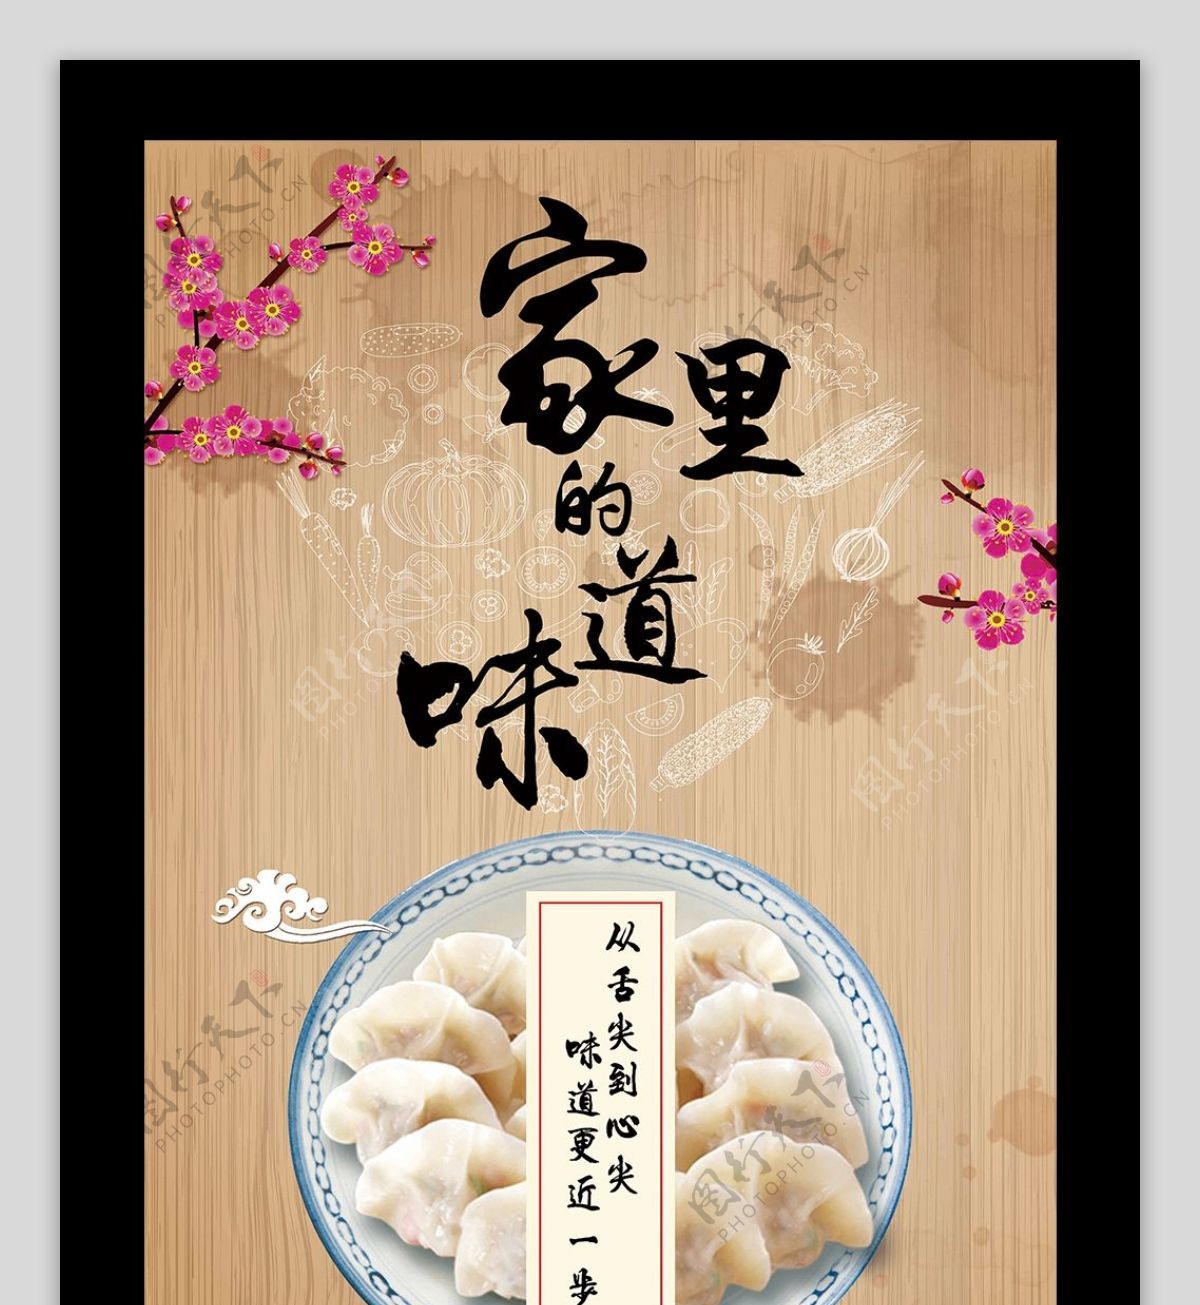 东北饺子美食宣传海报设计